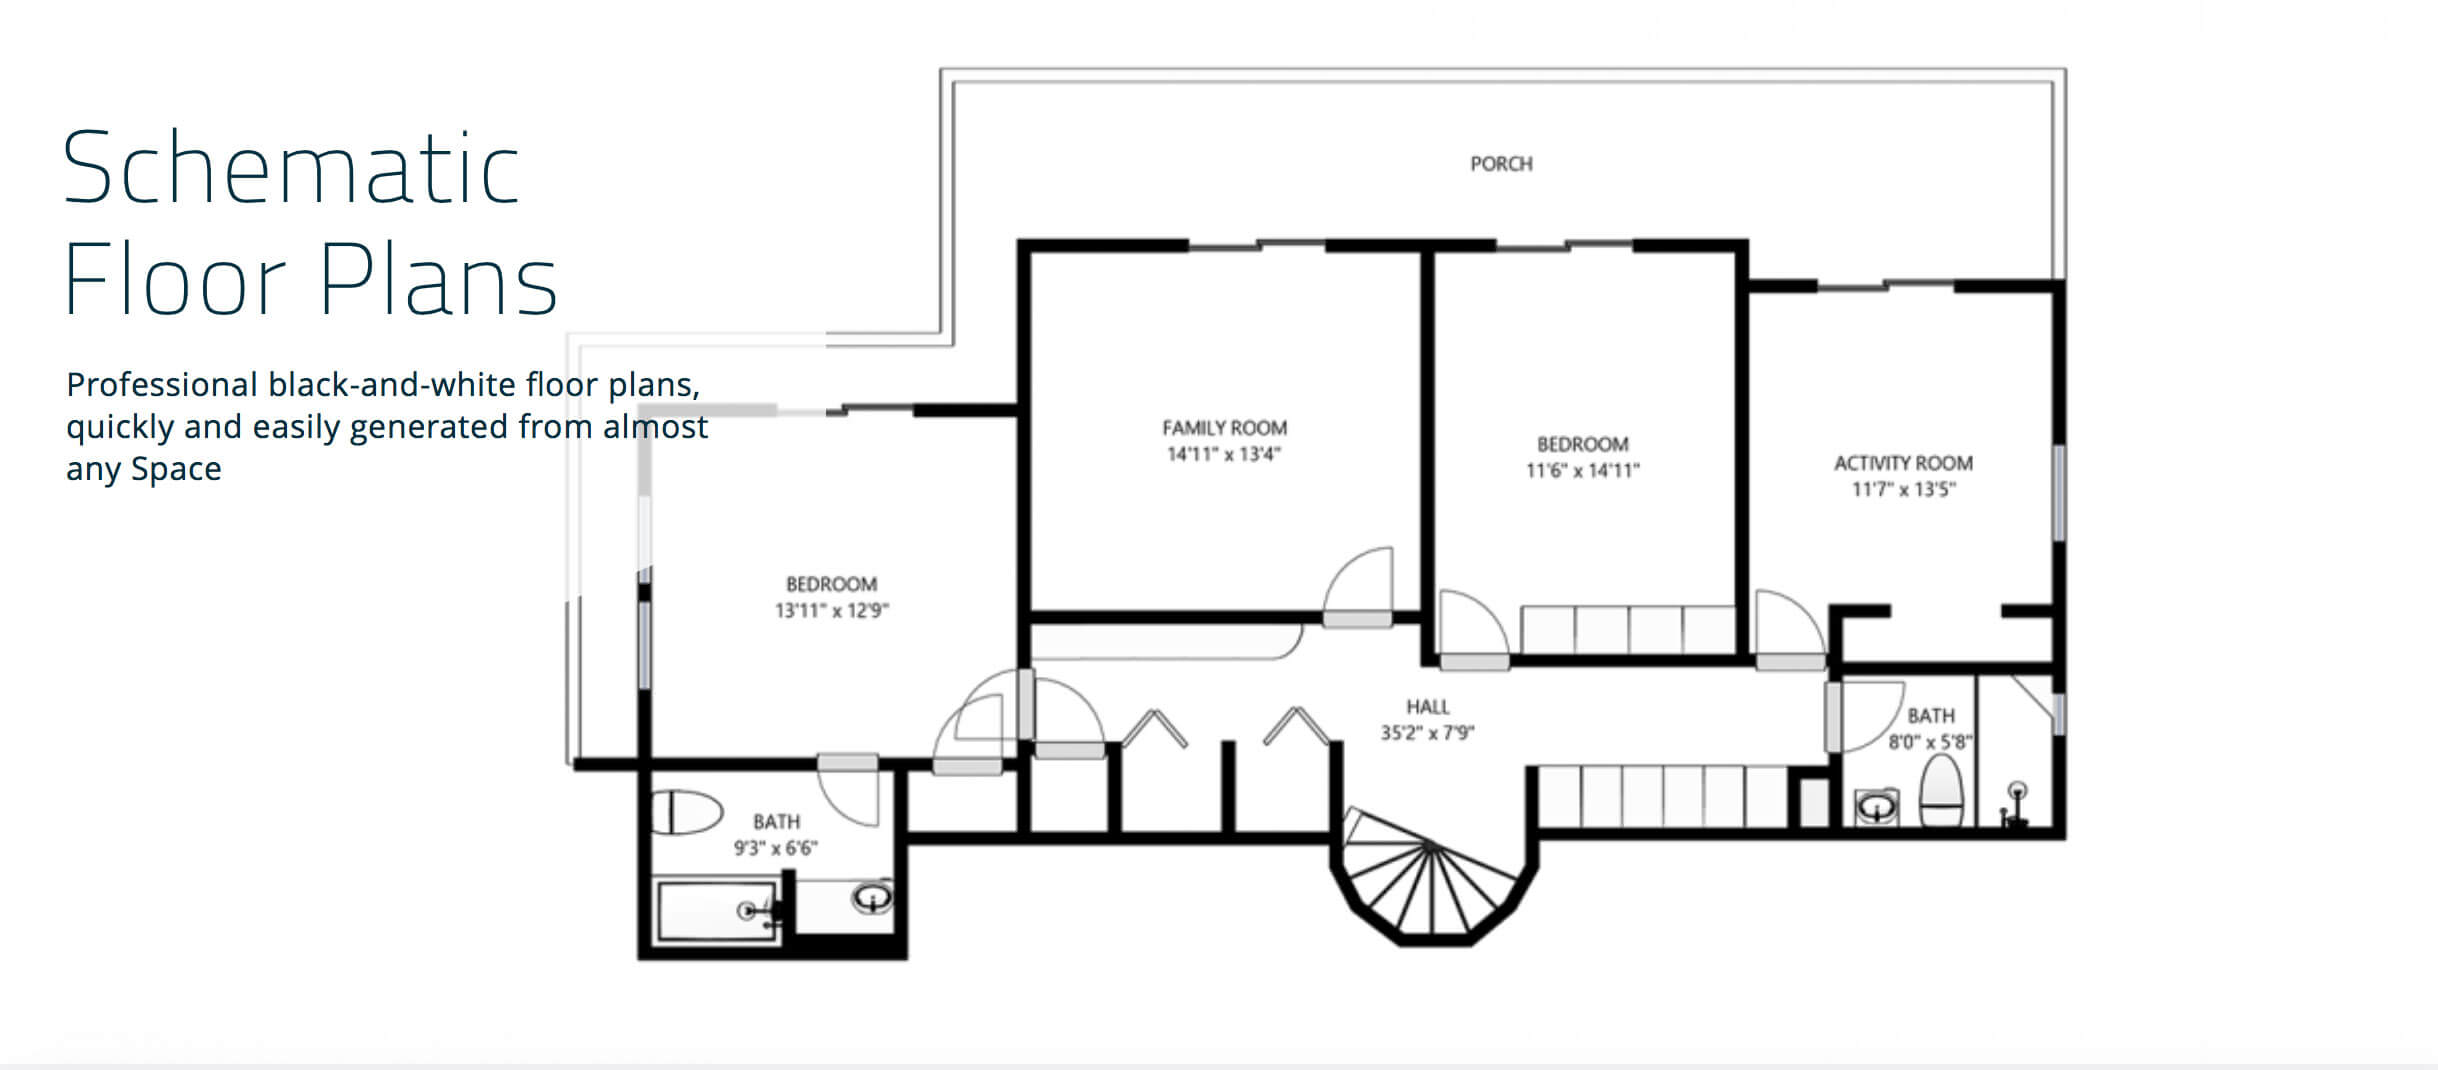 Matterport Schematic Floor Plan Premier Realty Services